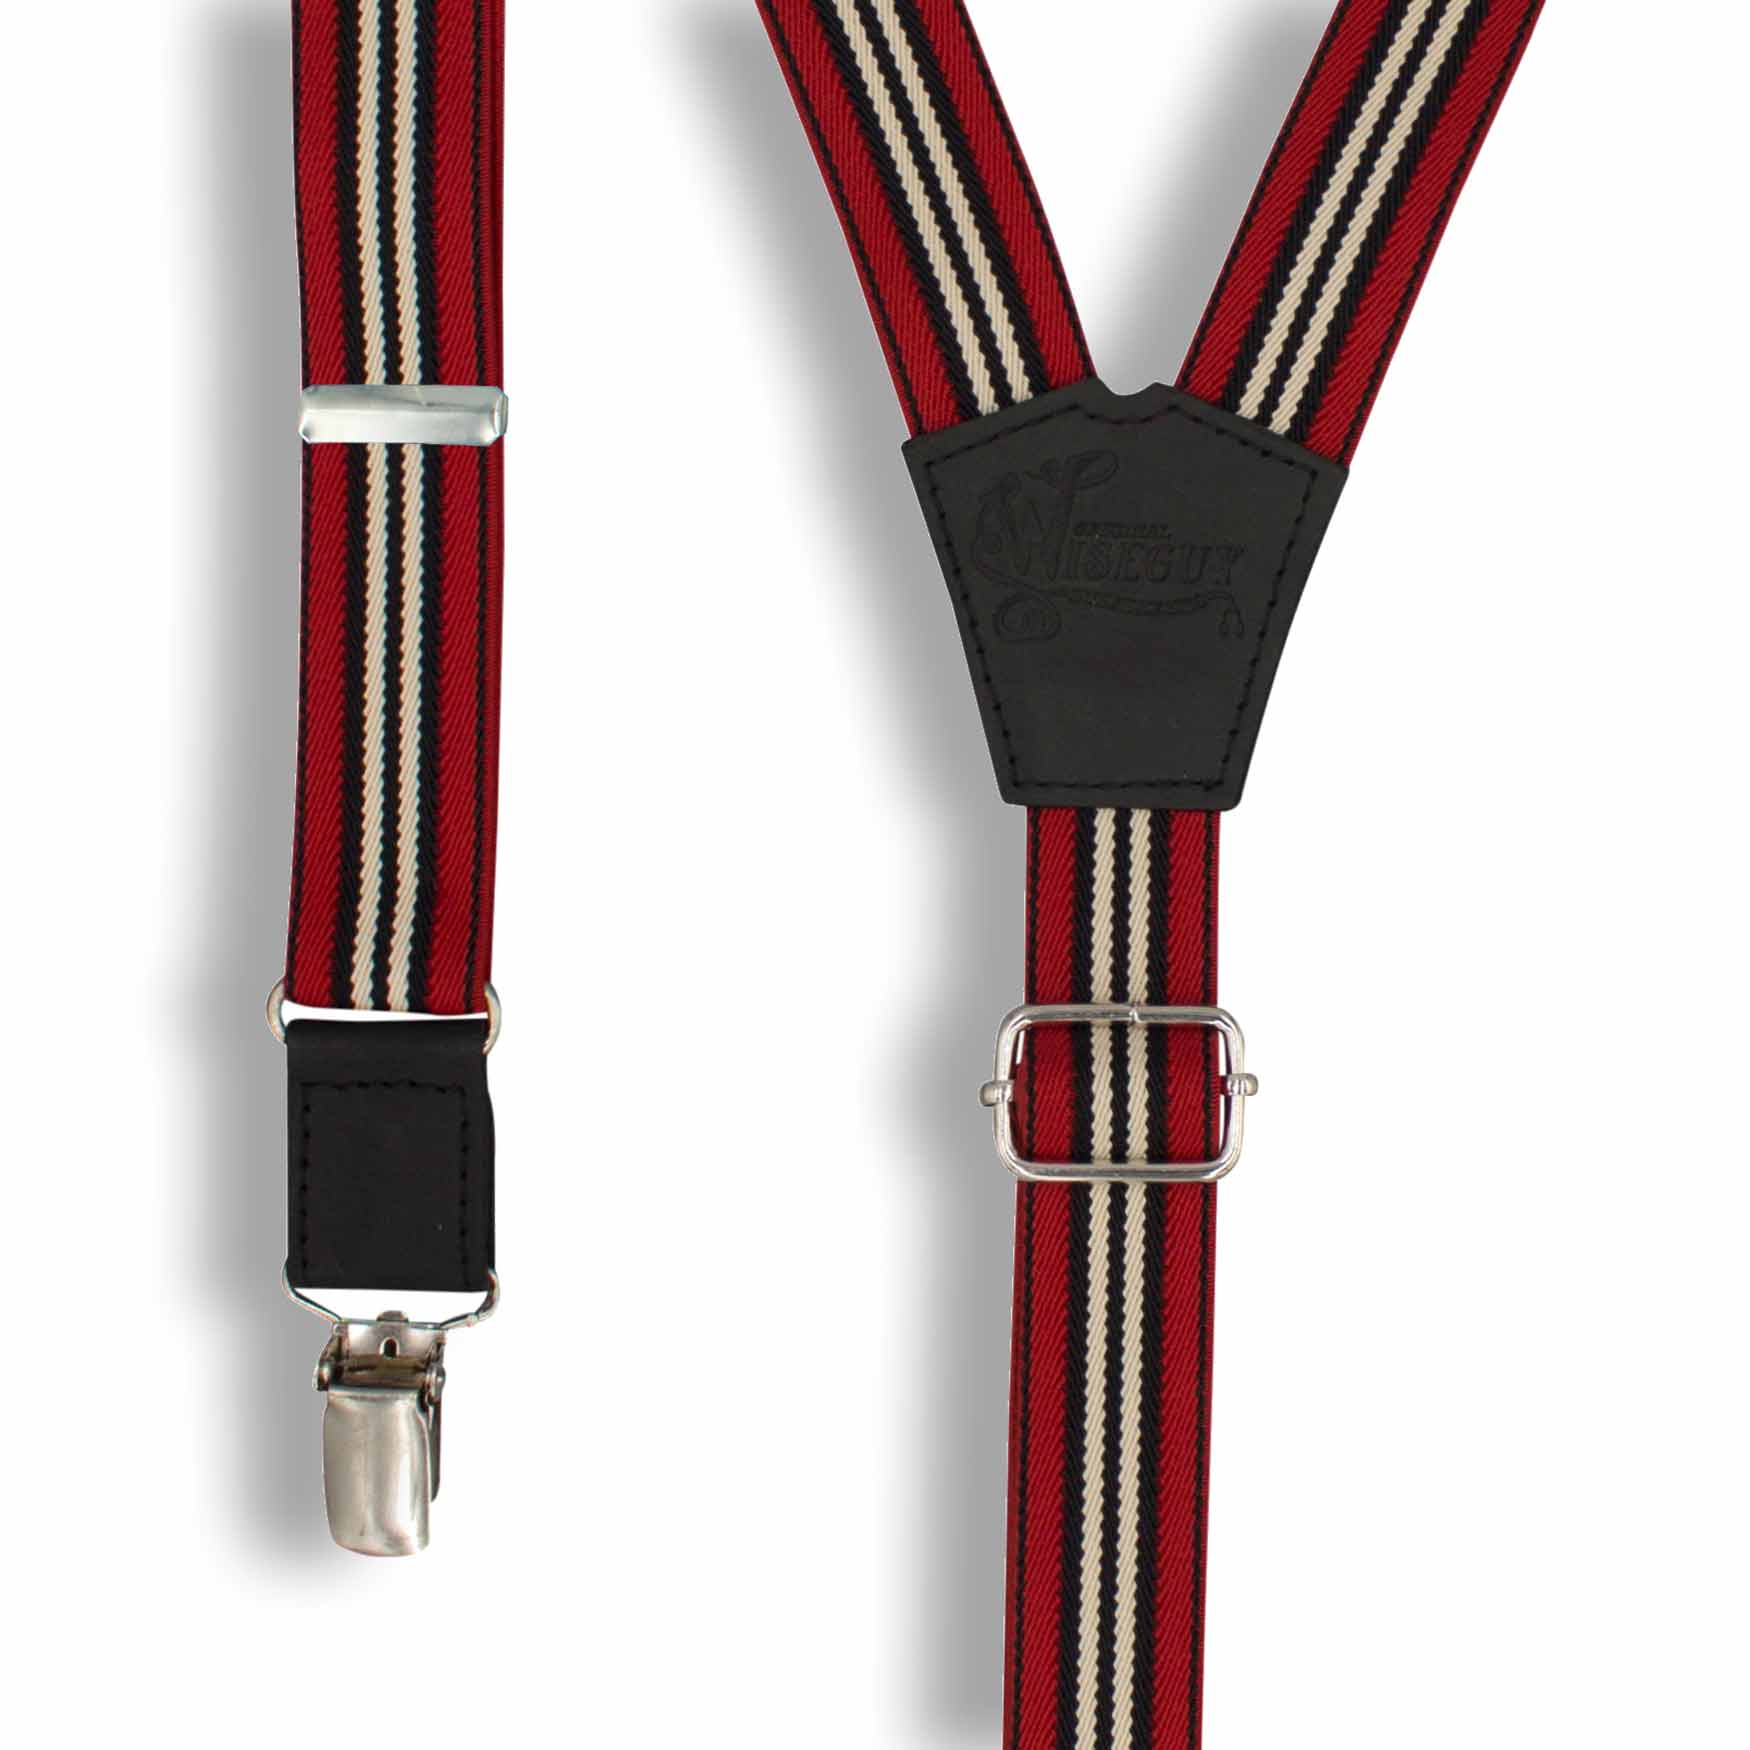 Monza Racing Suspenders slim straps (1 inch/2.54 cm) - Wiseguy Suspenders